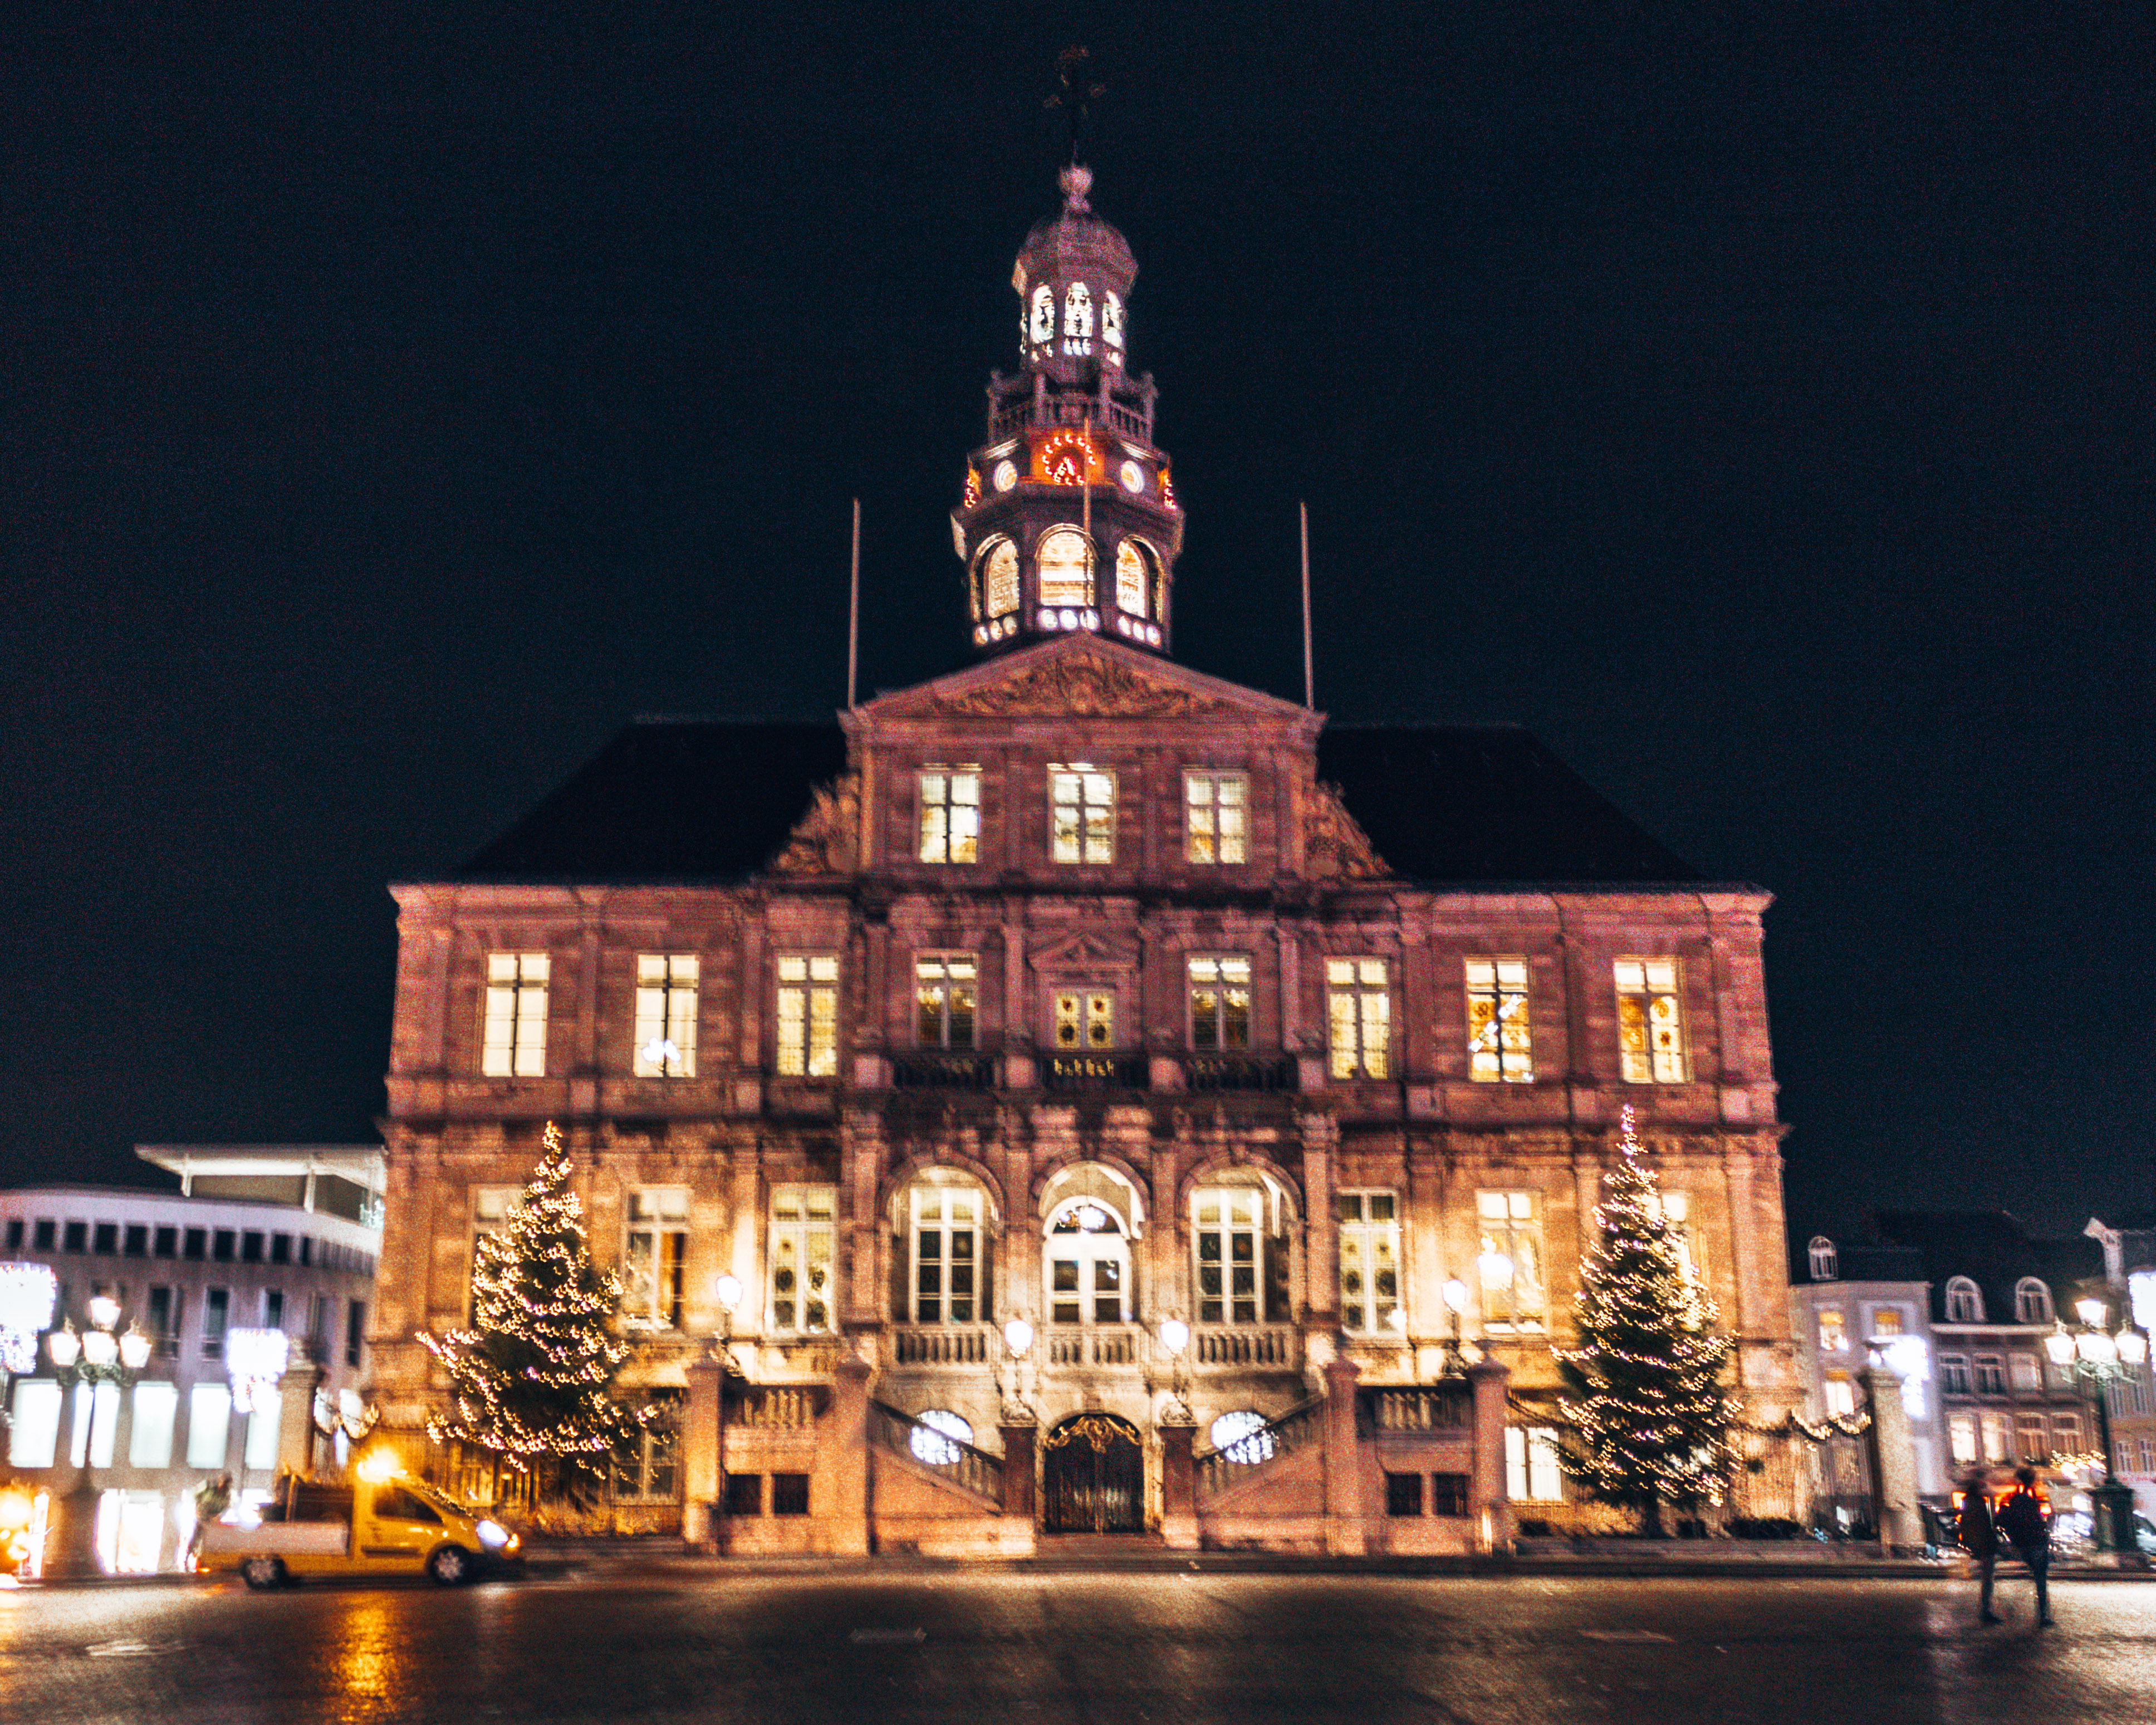 Maastricht Town Hall in Maastricht, Netherlands